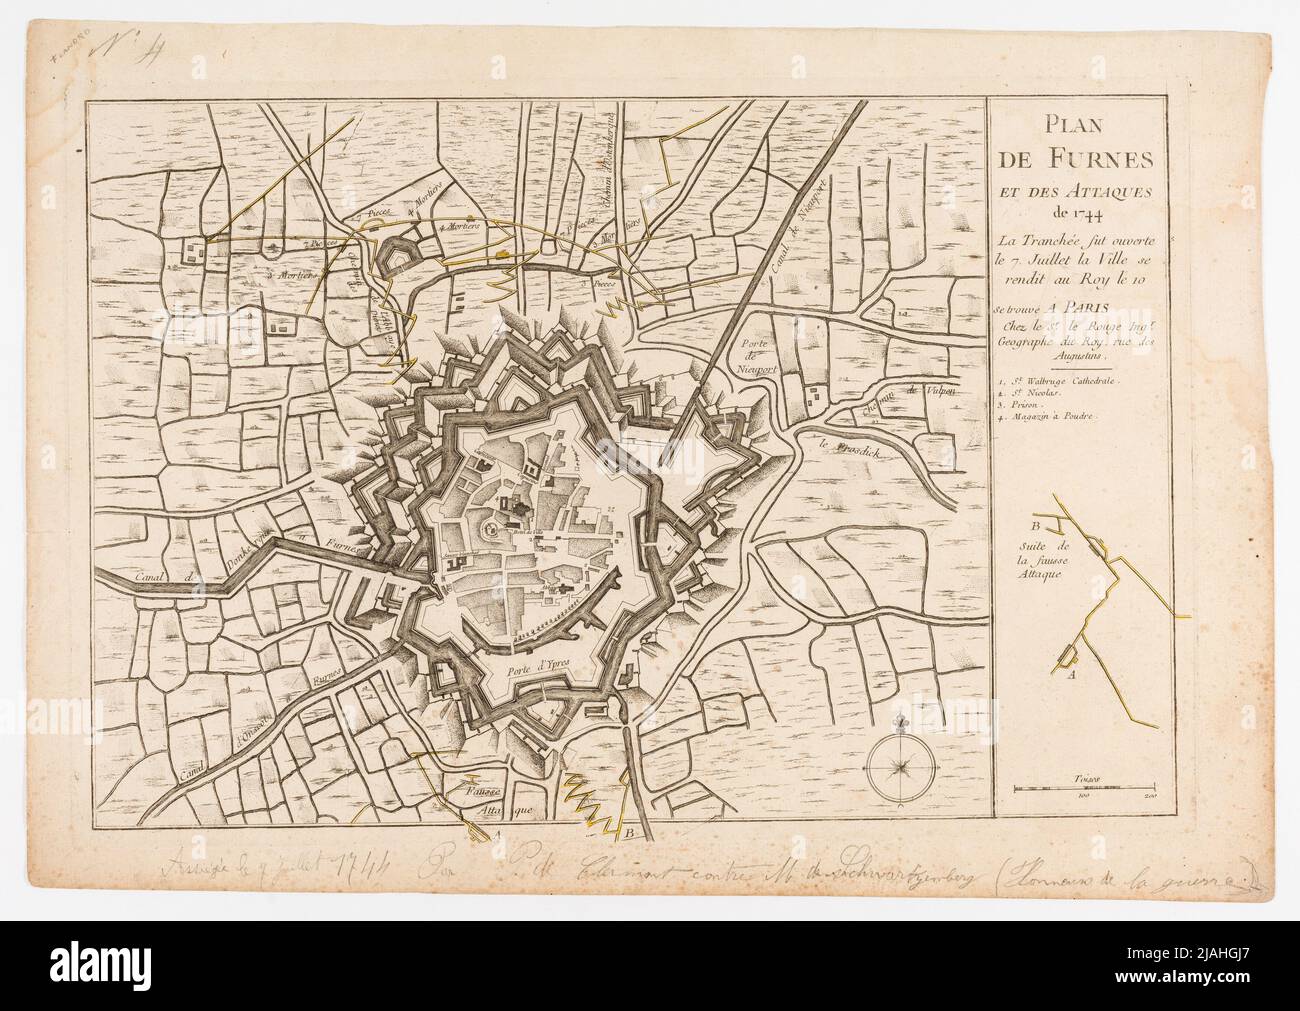 'Plan/de Furnes/and Attacks/of 1744/La Trancheé fue abierta/the 7. Juliett la ciudad se fue al Roy ...'. Angriffs plan Auf Furnes (Veurne, Westflanden) am 7. Julio 1744. Desconocido Foto de stock